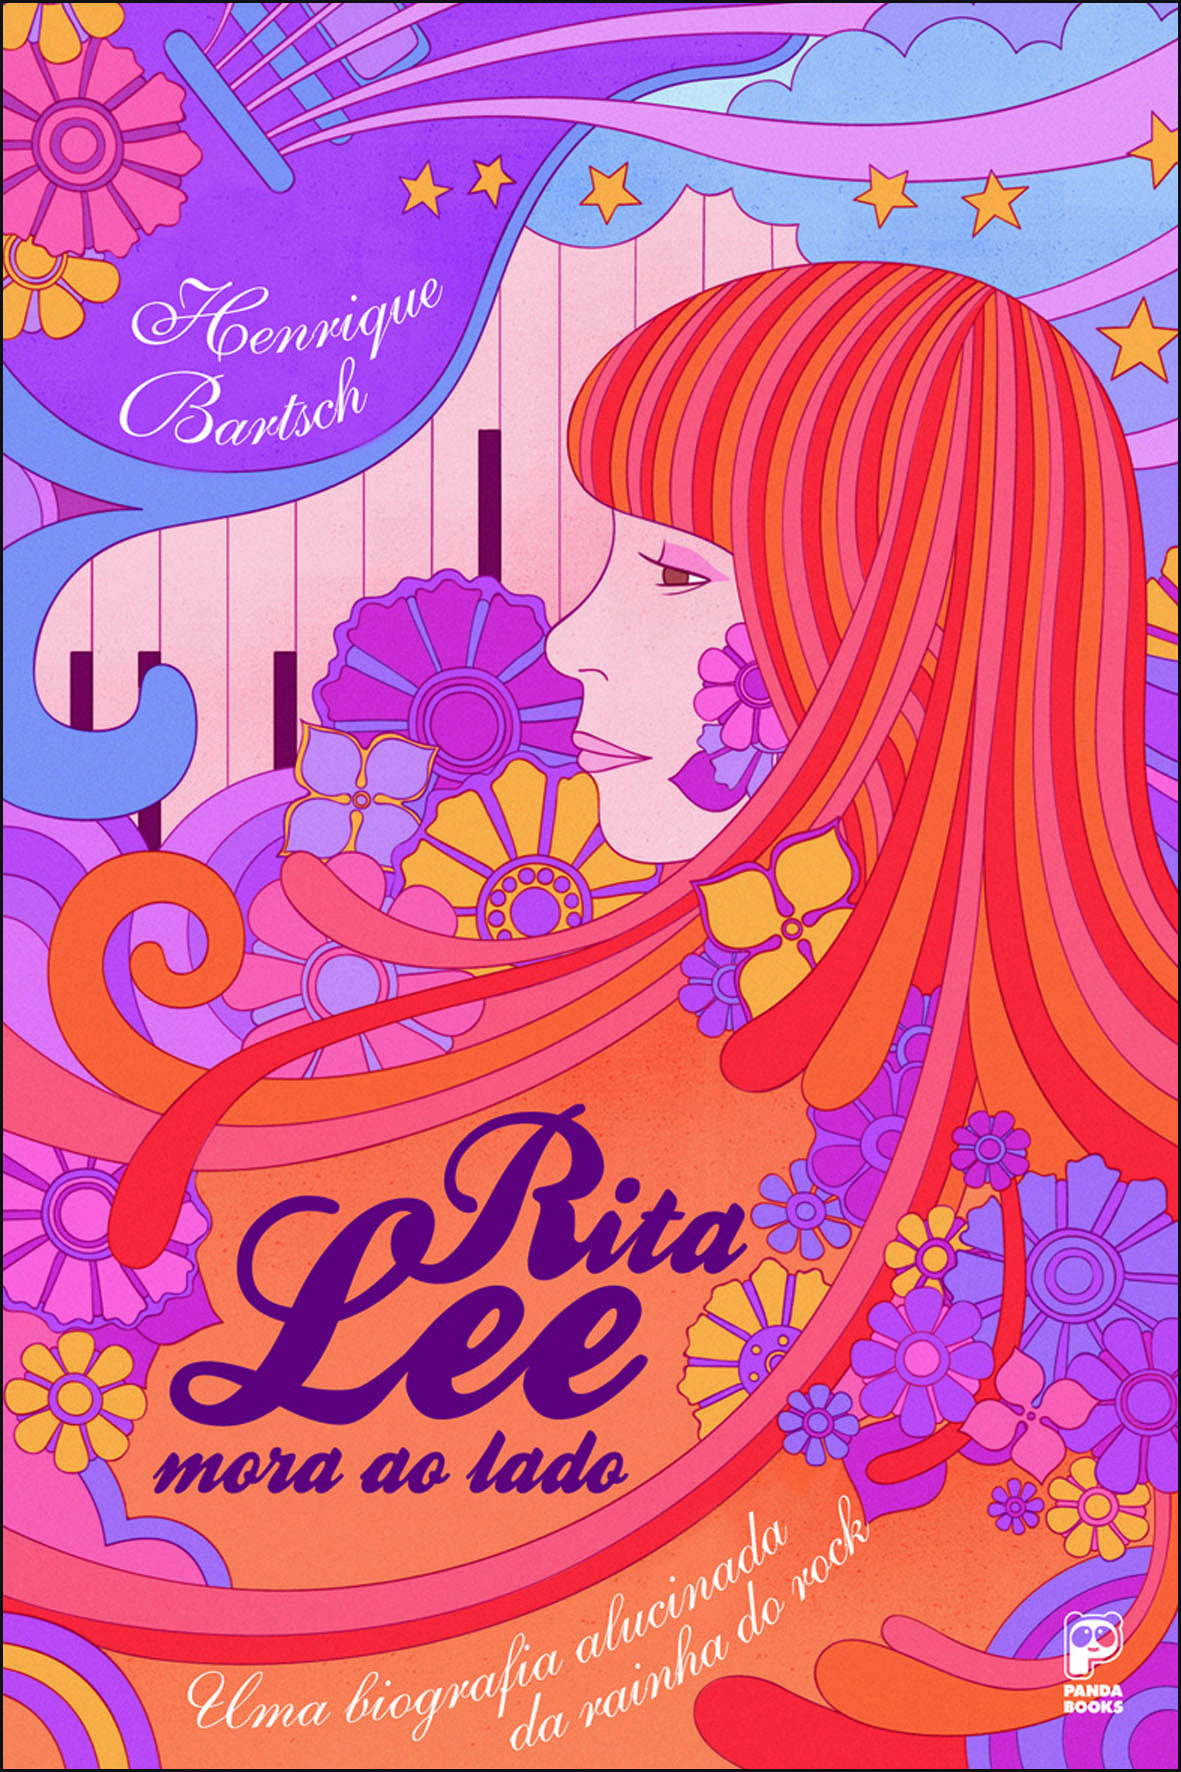 Ilustração. Capa de um livro que traz um desenho de uma mulher de cabelo longo liso ruivo, de perfil, com flores rosas e amarelas. No centro, o título da obra: “Rita Lee mora ao lado”. A imagem é colorida em tons de laranja, amarelo, rosa e lilás.